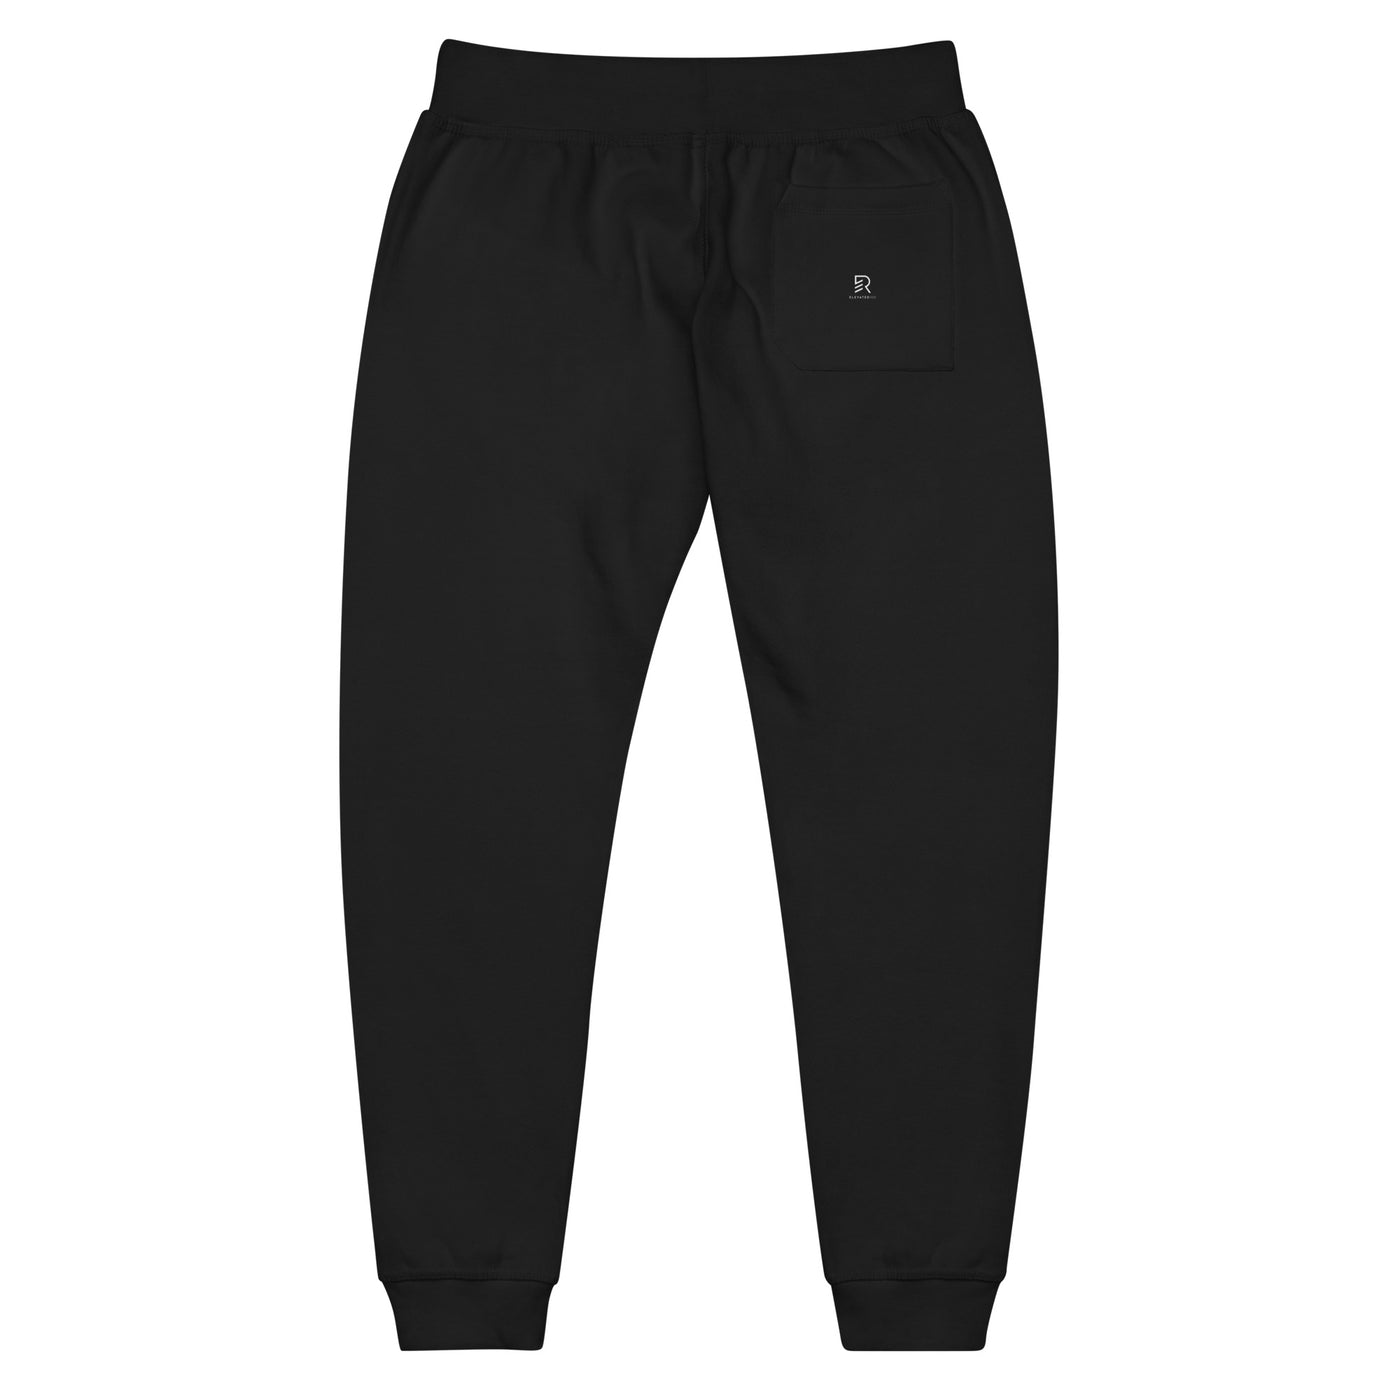 Men's Black Fleece Sweatpants - Stay Focus Get It Done